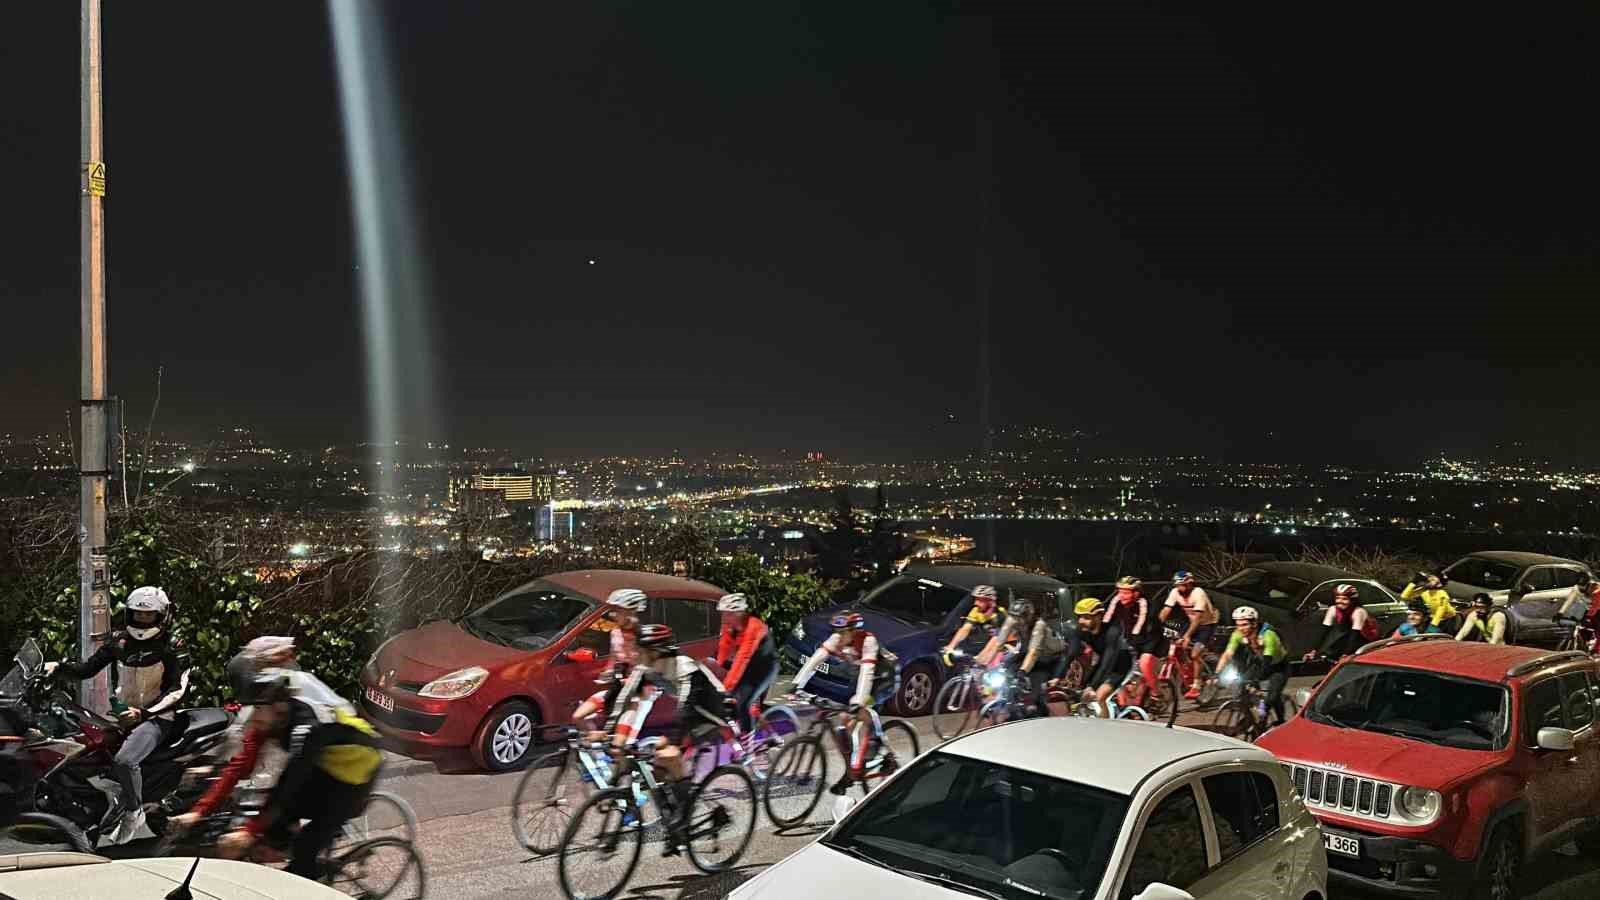 bisiklet tutkunlari iftar sonrasi uludaga pedal cevirdi 2 euCM4jED